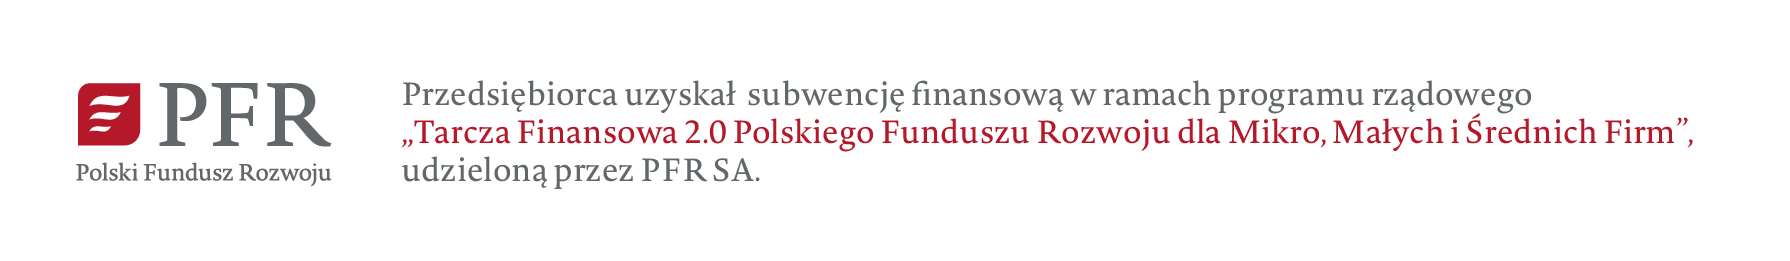 Przedsiębiorca uzyskał subwencję finansową w ramach programu Tarcza Finansowa 2.0 Polskiego Funduszu Rozwoju dla Mikro, Małych i Średnich Firm